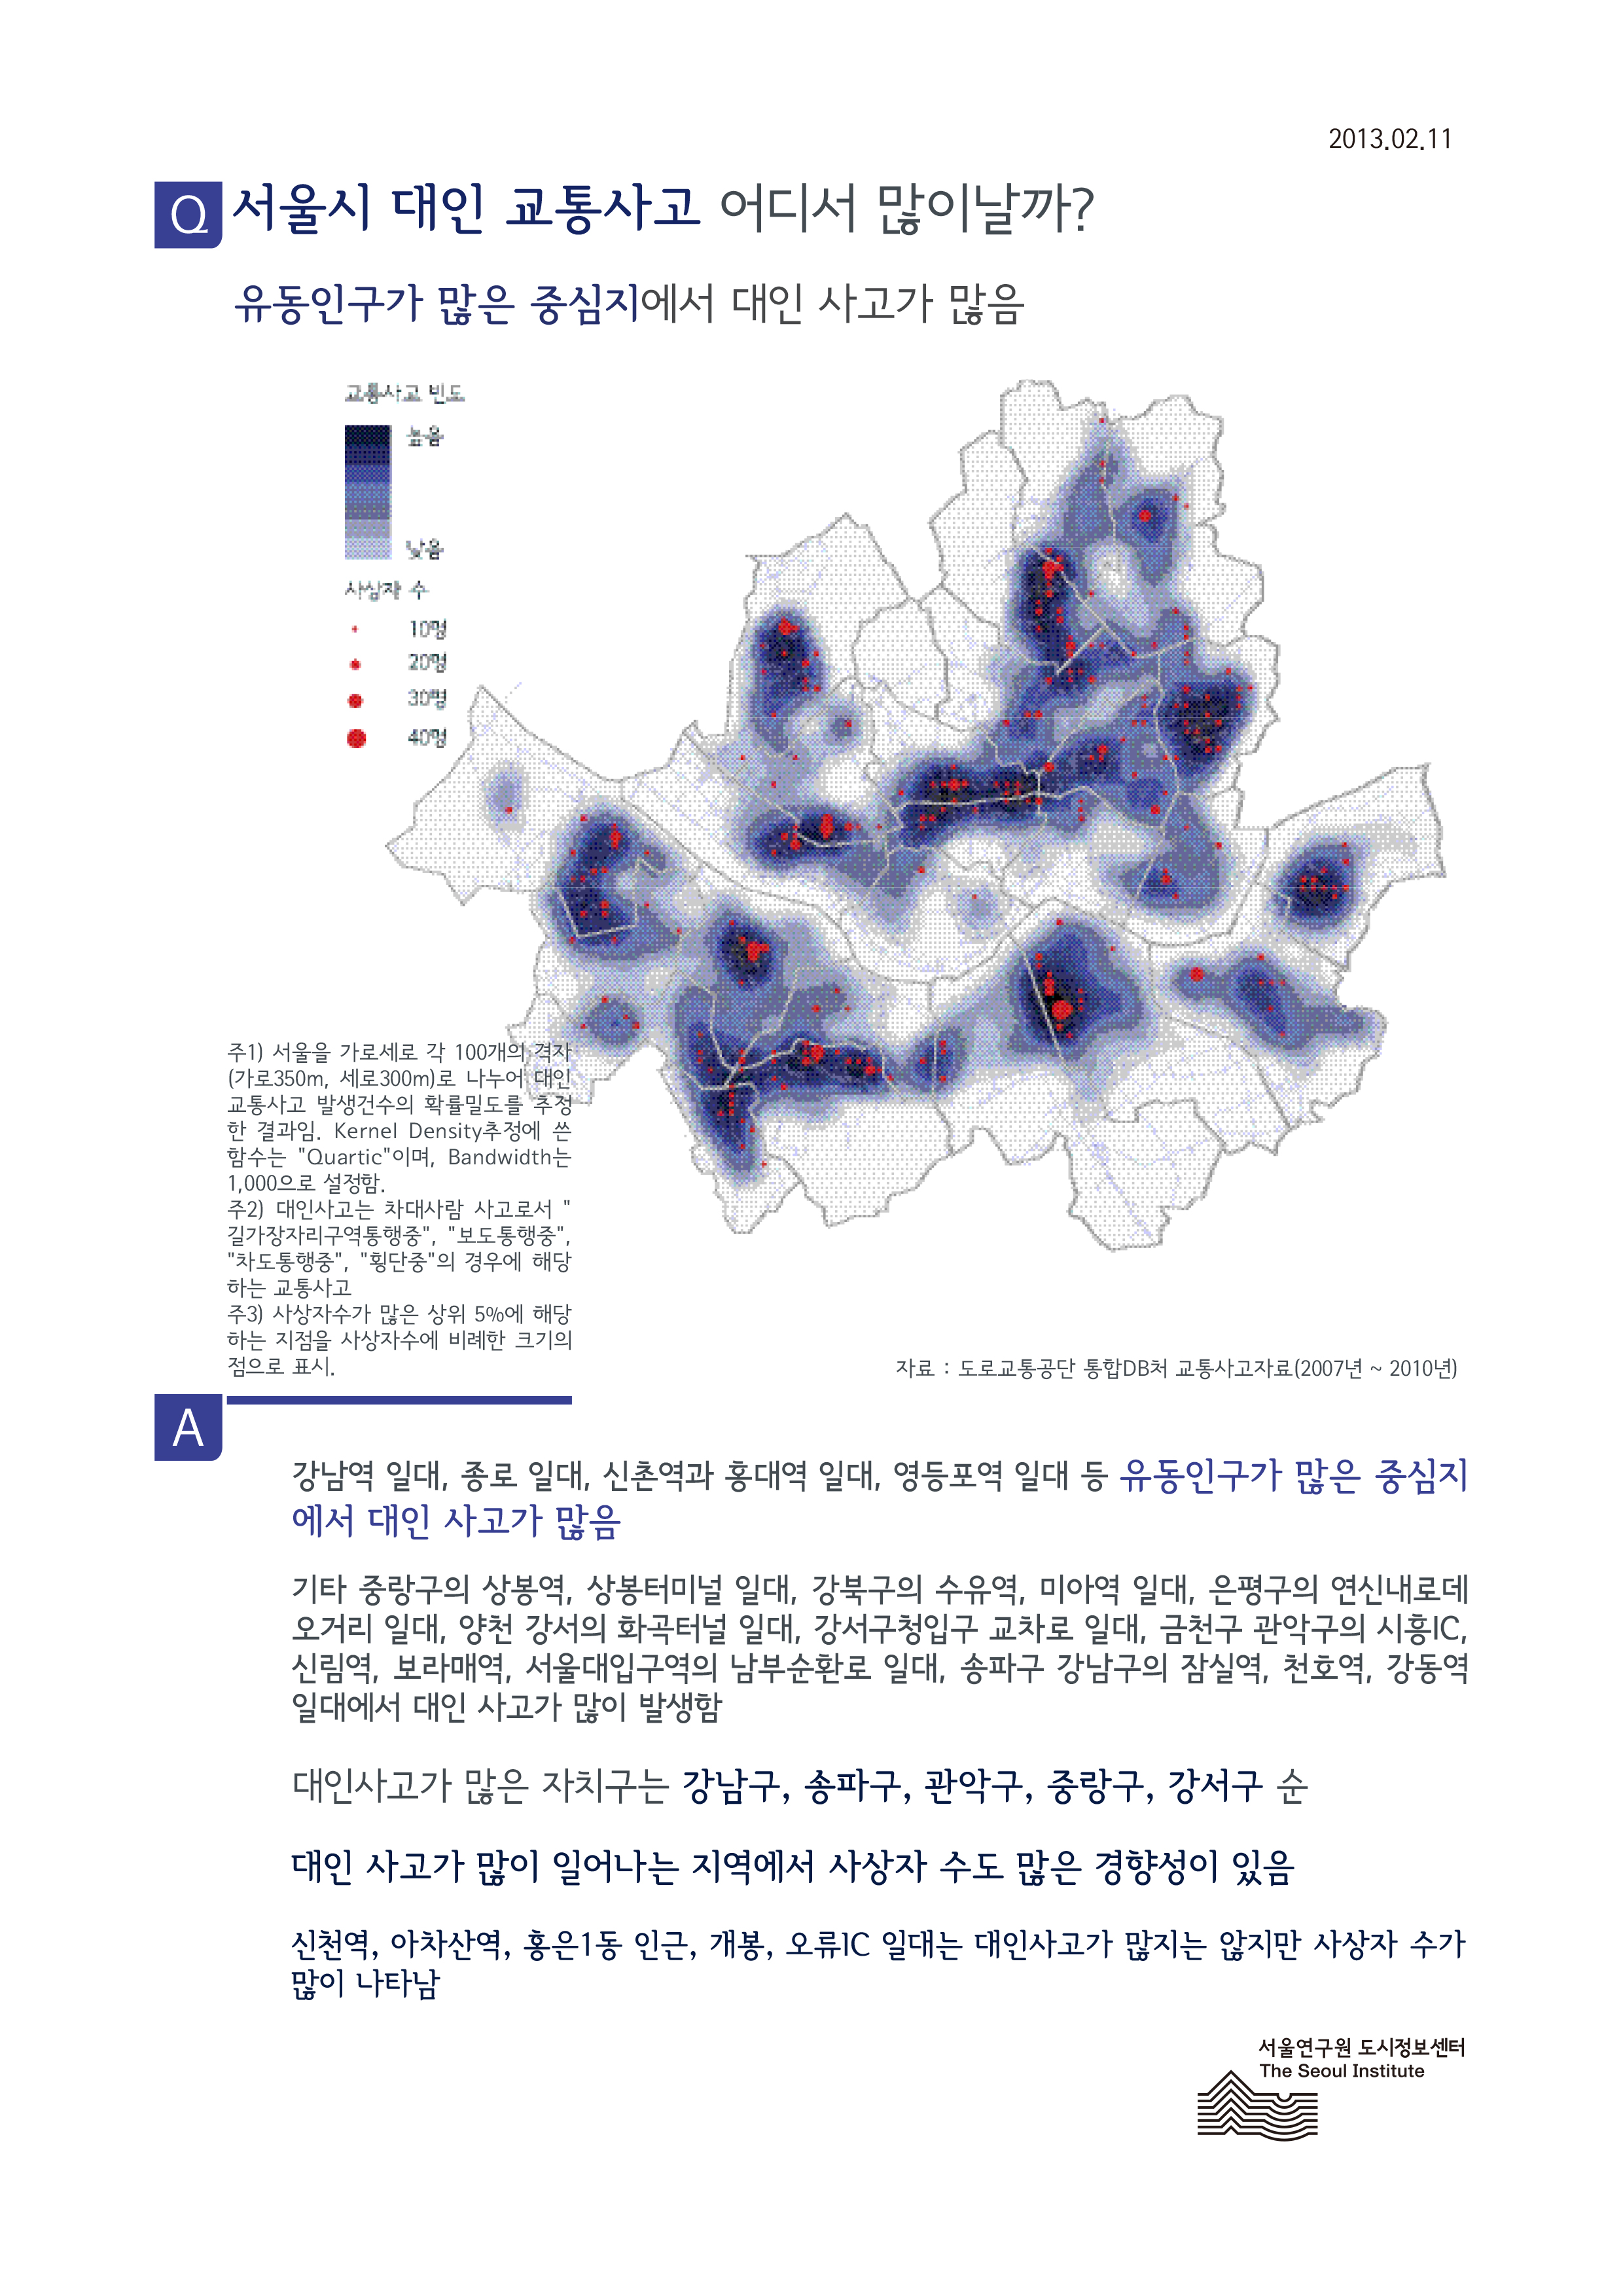 서울시 대인 교통사고 어디서 많이날까? 서울인포그래픽스 제20호 2013년 2월 12일 유동인구가 많은 중심지에서 대인 사고가 많음으로 정리될 수 있습니다. 인포그래픽으로 제공되는 그래픽은 하단에 표로 자세히 제공됩니다.